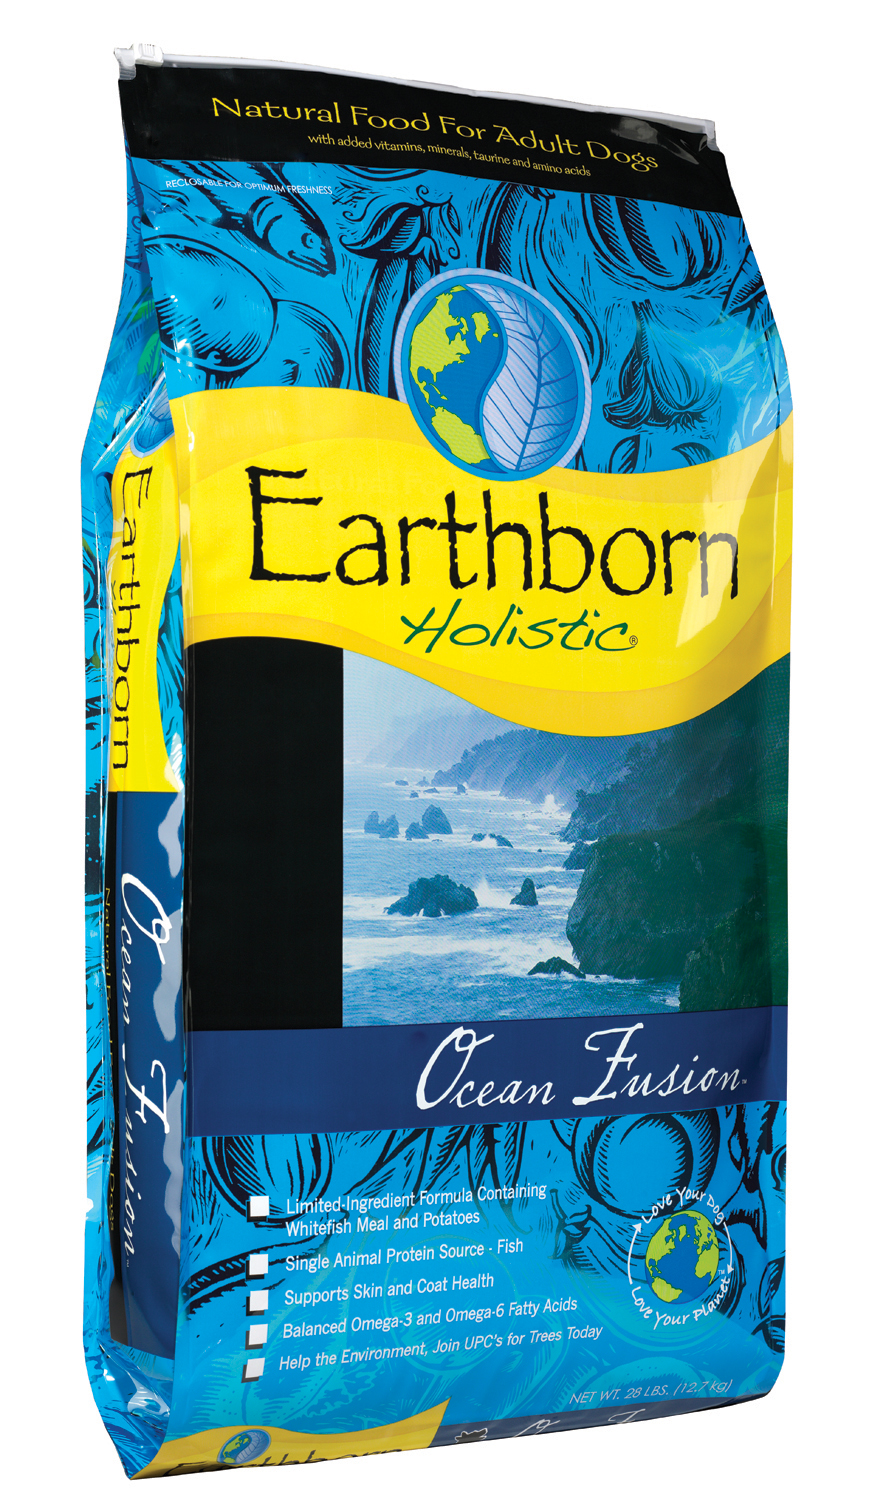 Earthborn Holistic Ocean Fusion, 28 lbs